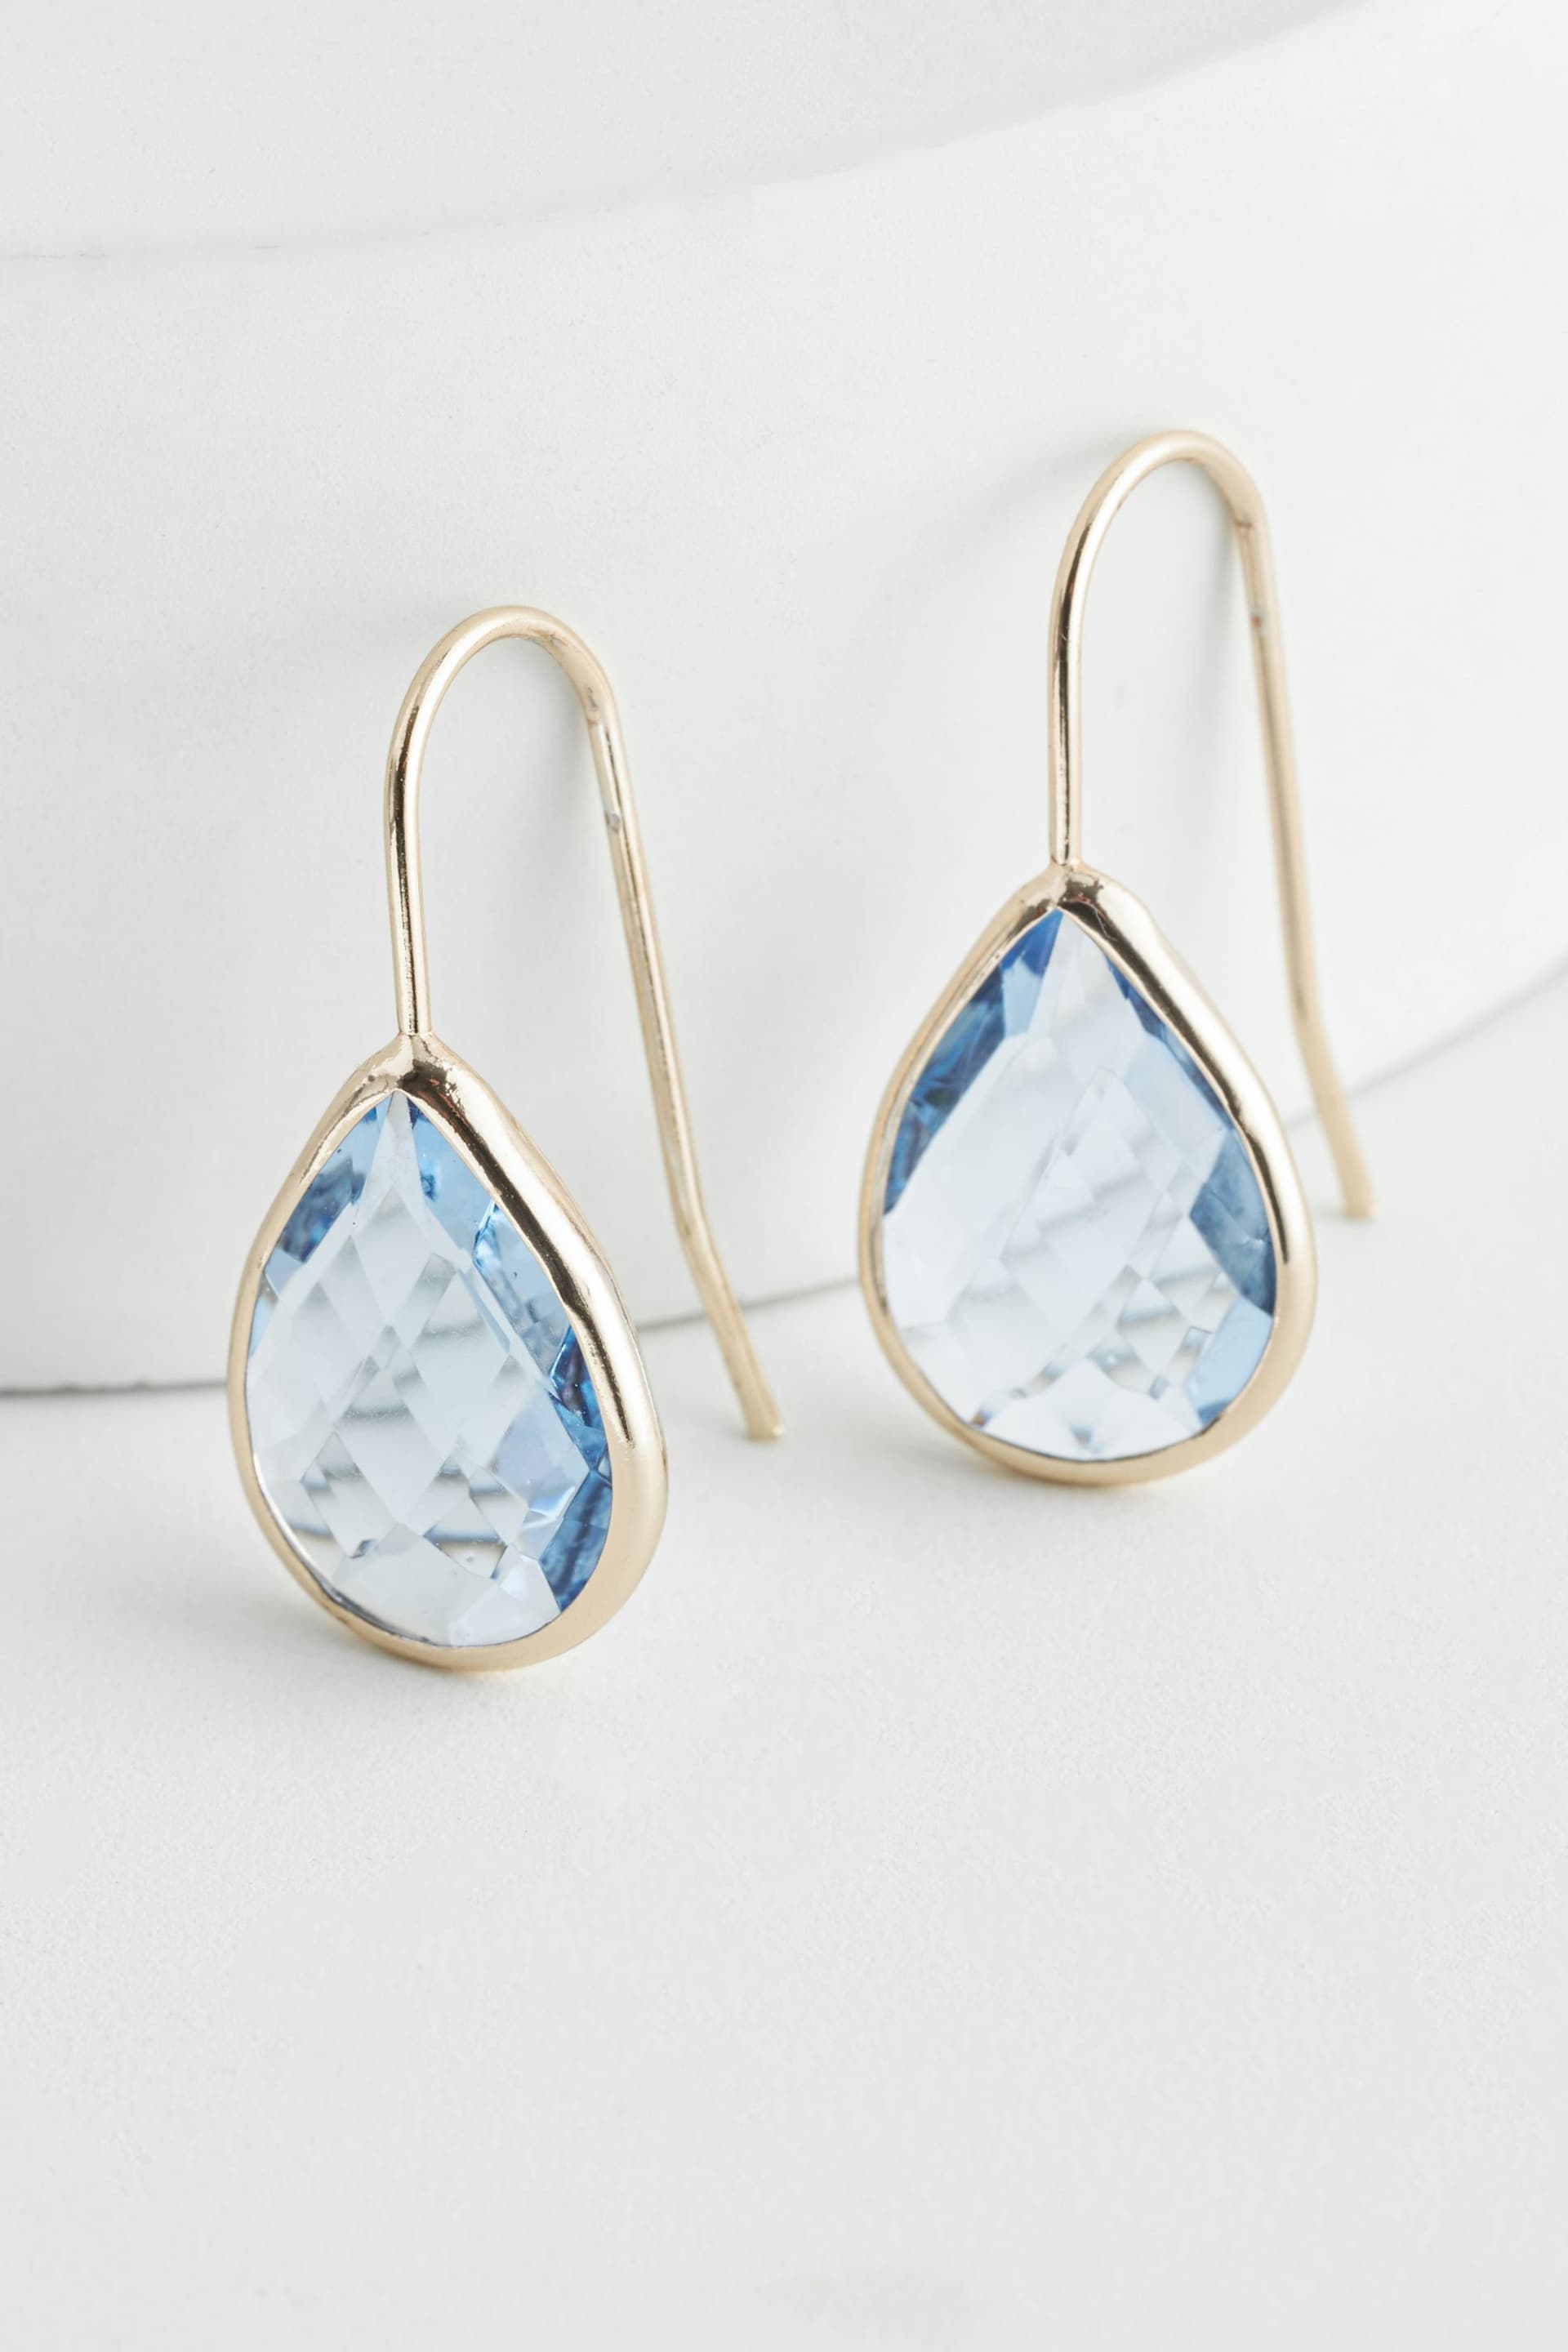 Gold Tone Teardrop Blue Stone Earrings - Image 3 of 4